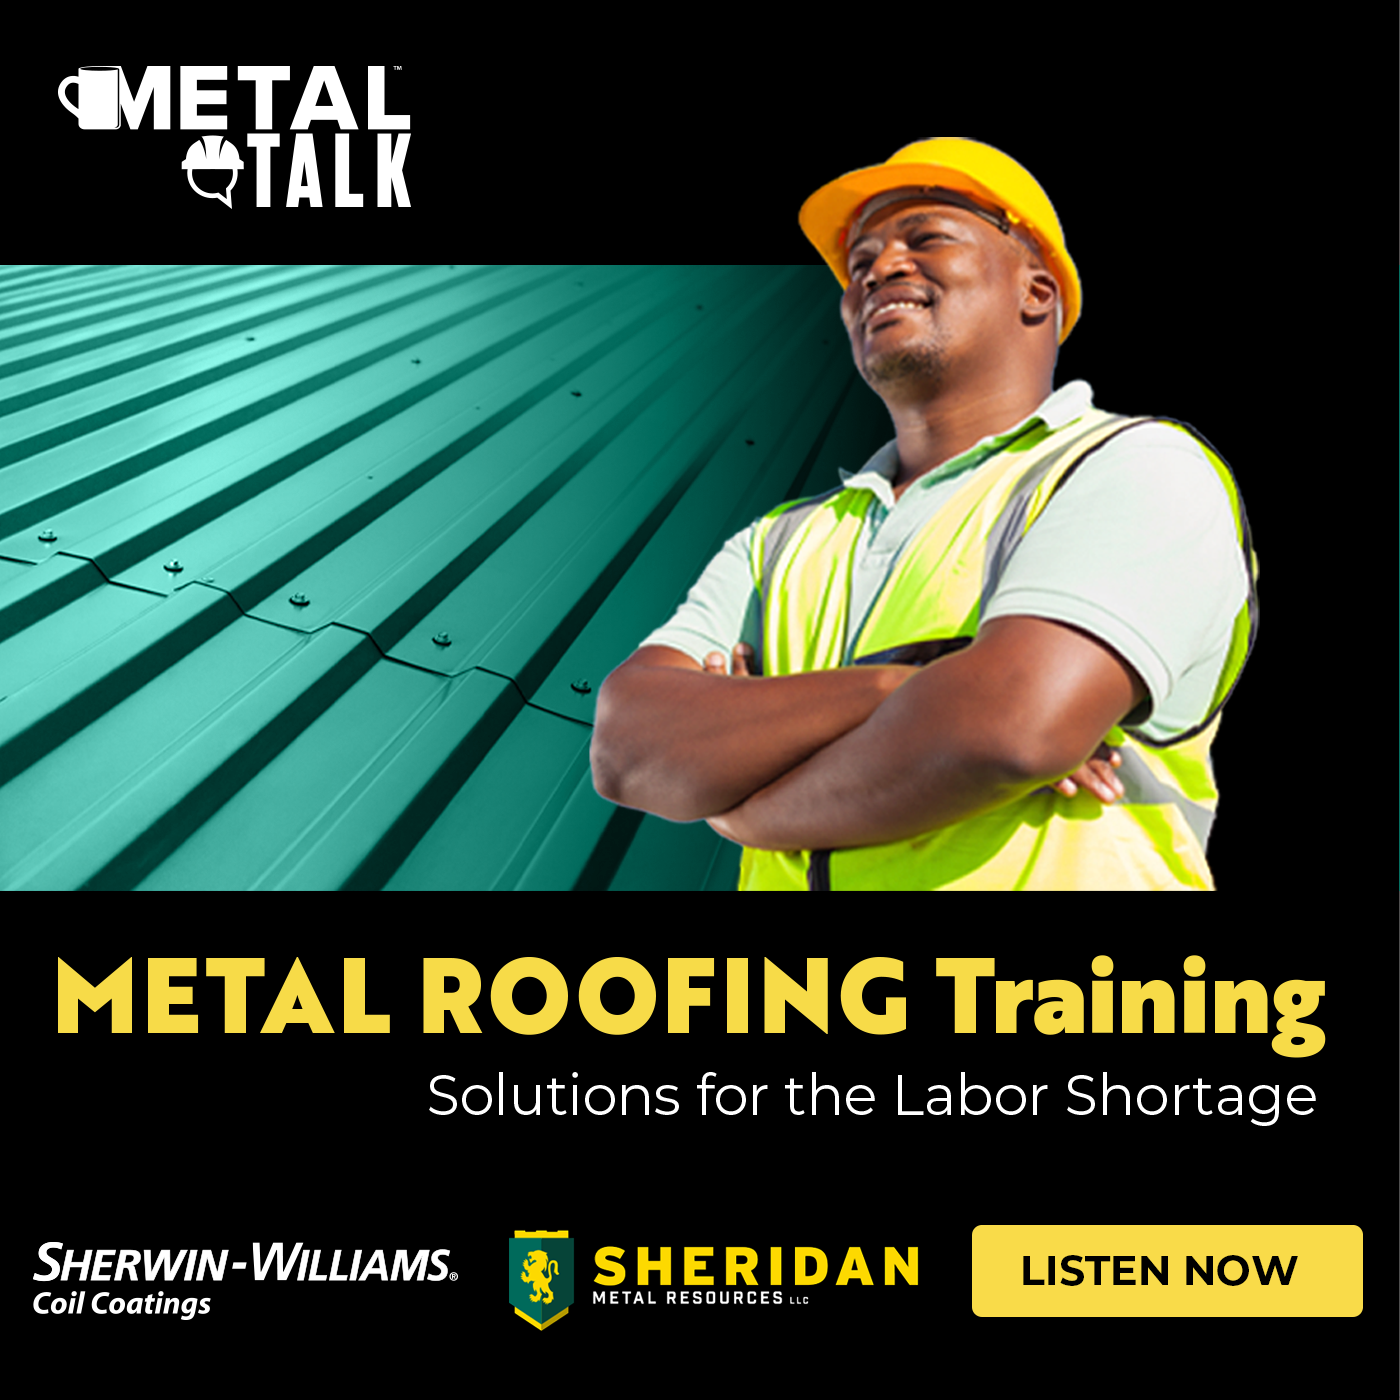 Sheridan Metal Resources - MetalTalk